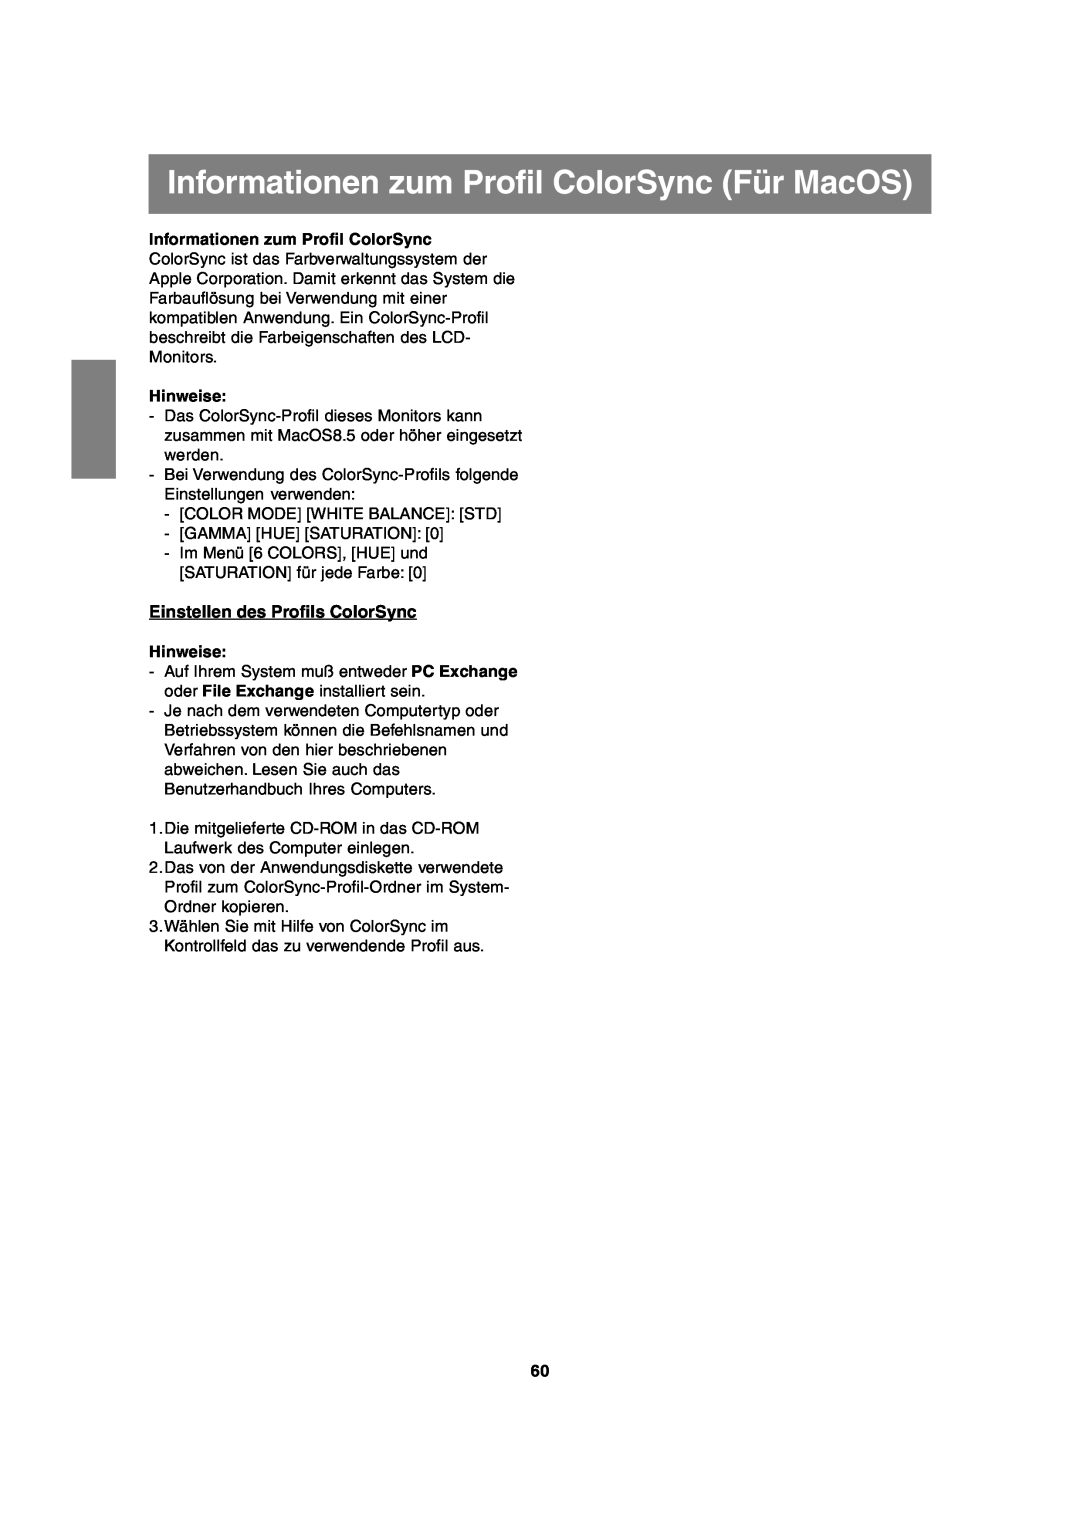 Sharp LL-T2020 operation manual Informationen zum Profil ColorSync Für MacOS, Einstellen des Profils ColorSync, Hinweise 